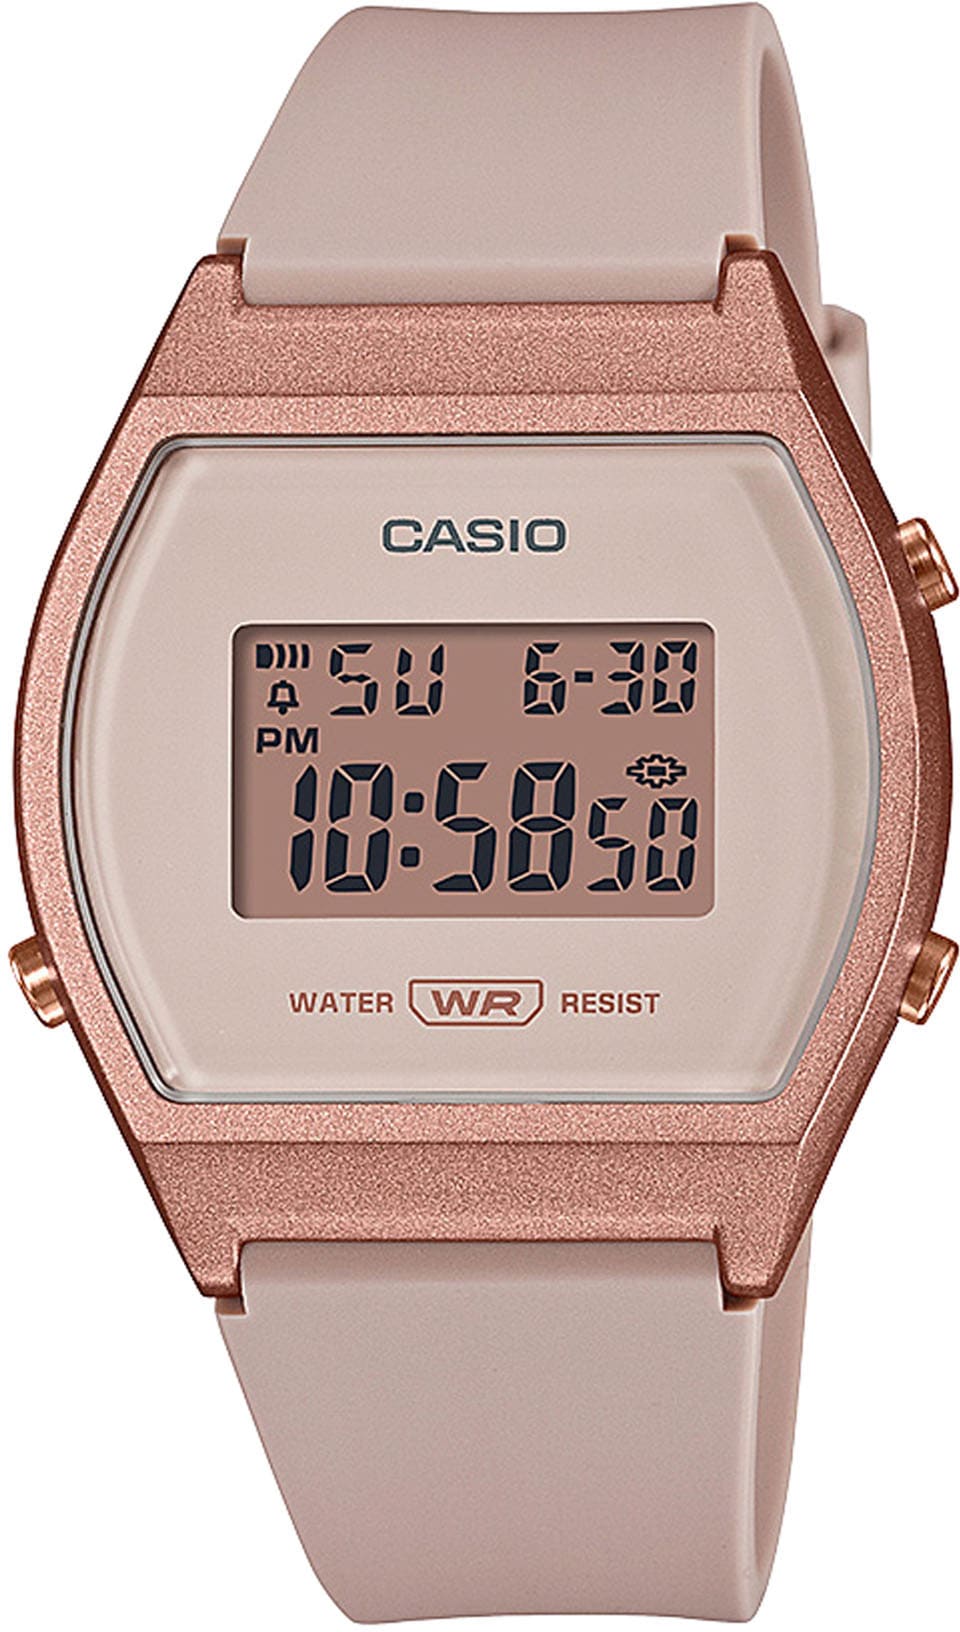 Casio Collection Chronograph »LW-204-4AEF« bei OTTO kaufen